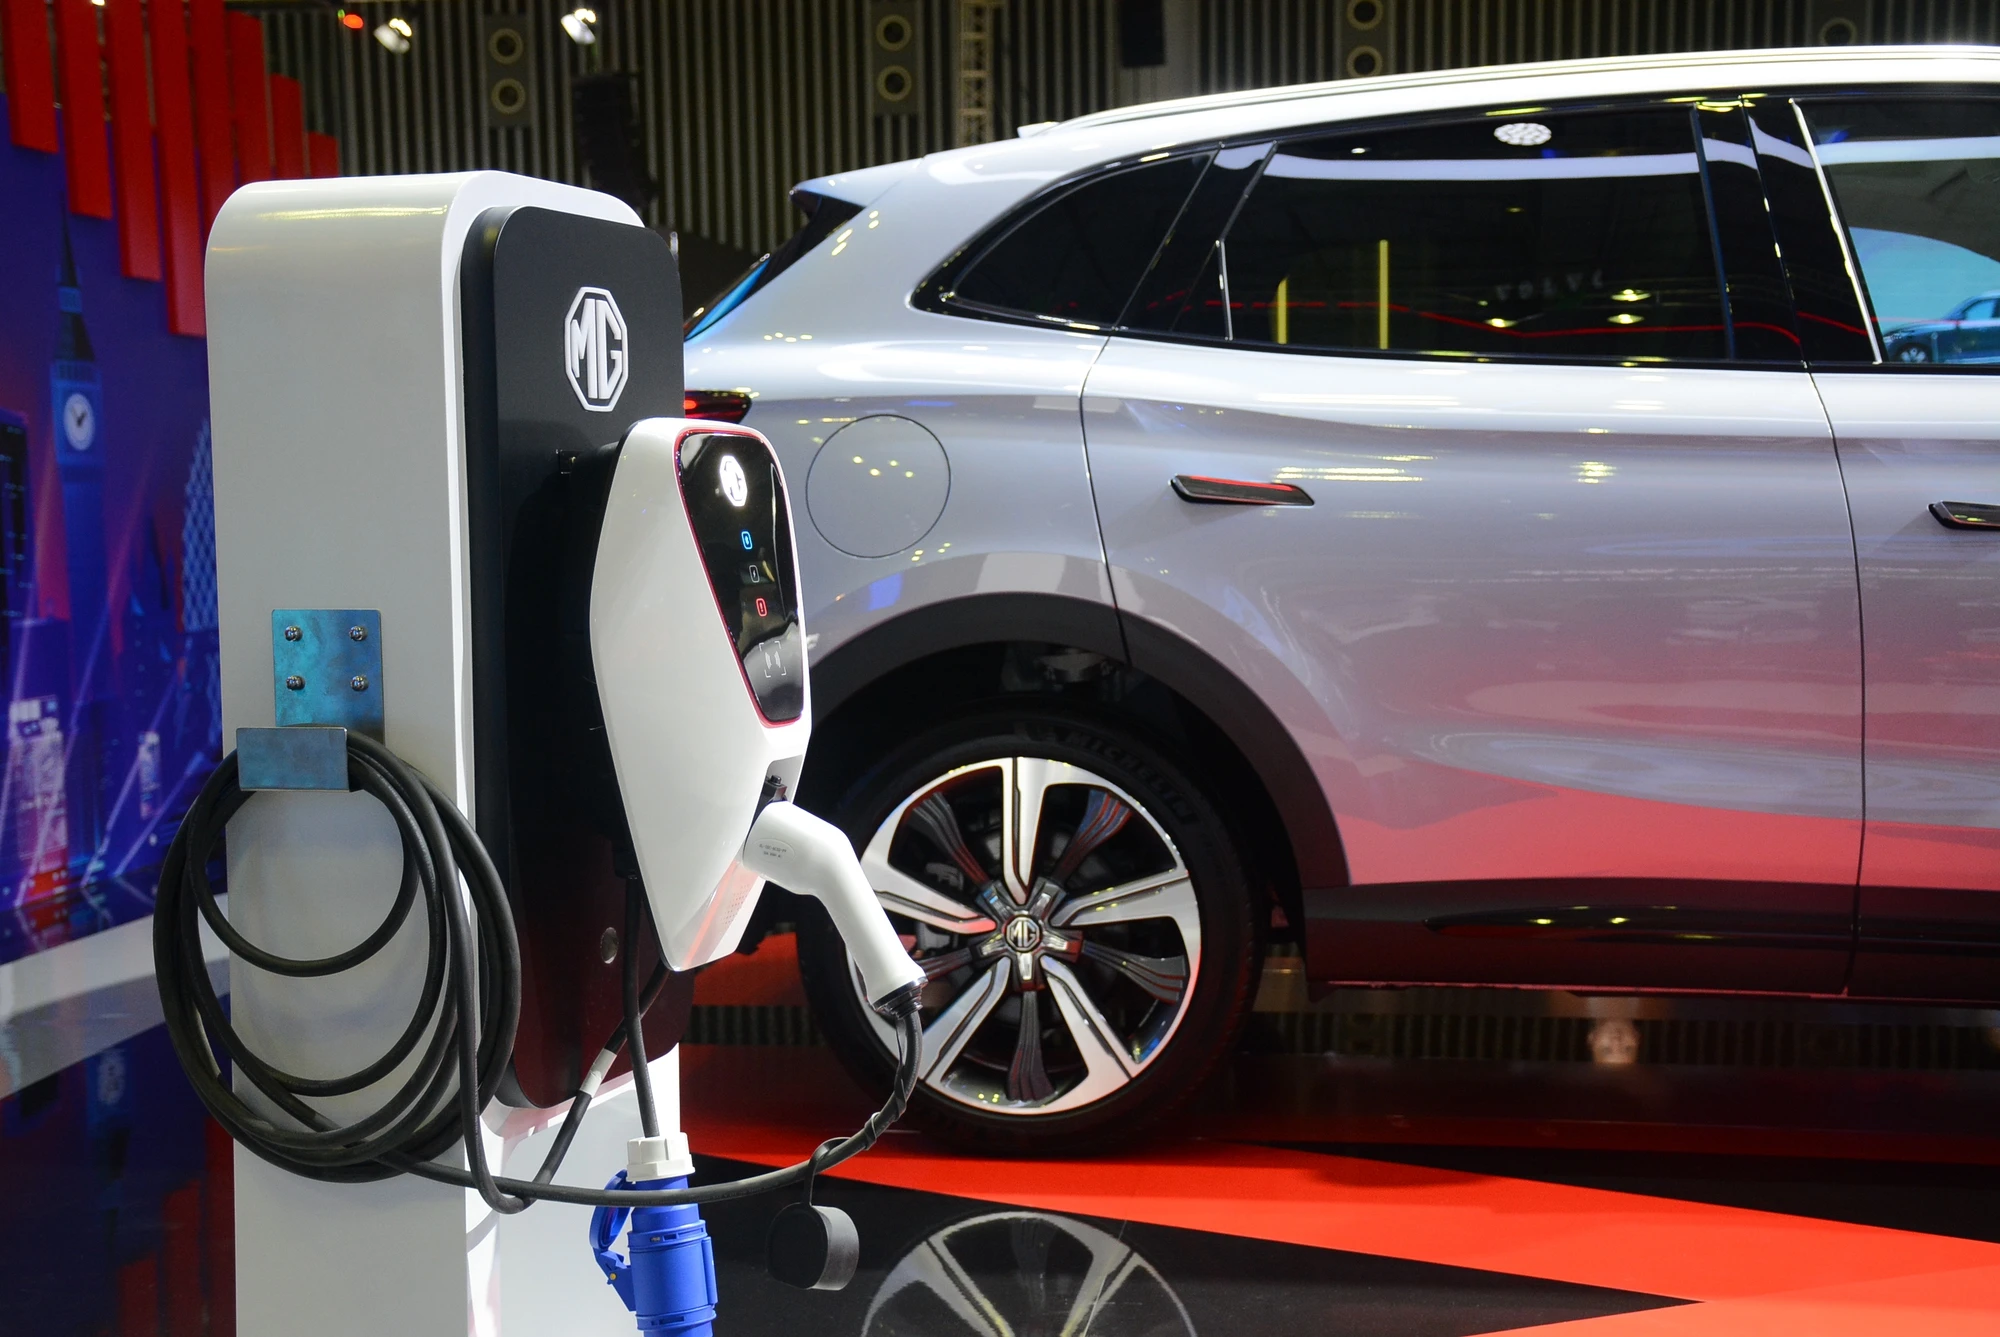 Tỷ lệ khách hàng tiềm năng mua ô tô điện ngày càng giảm